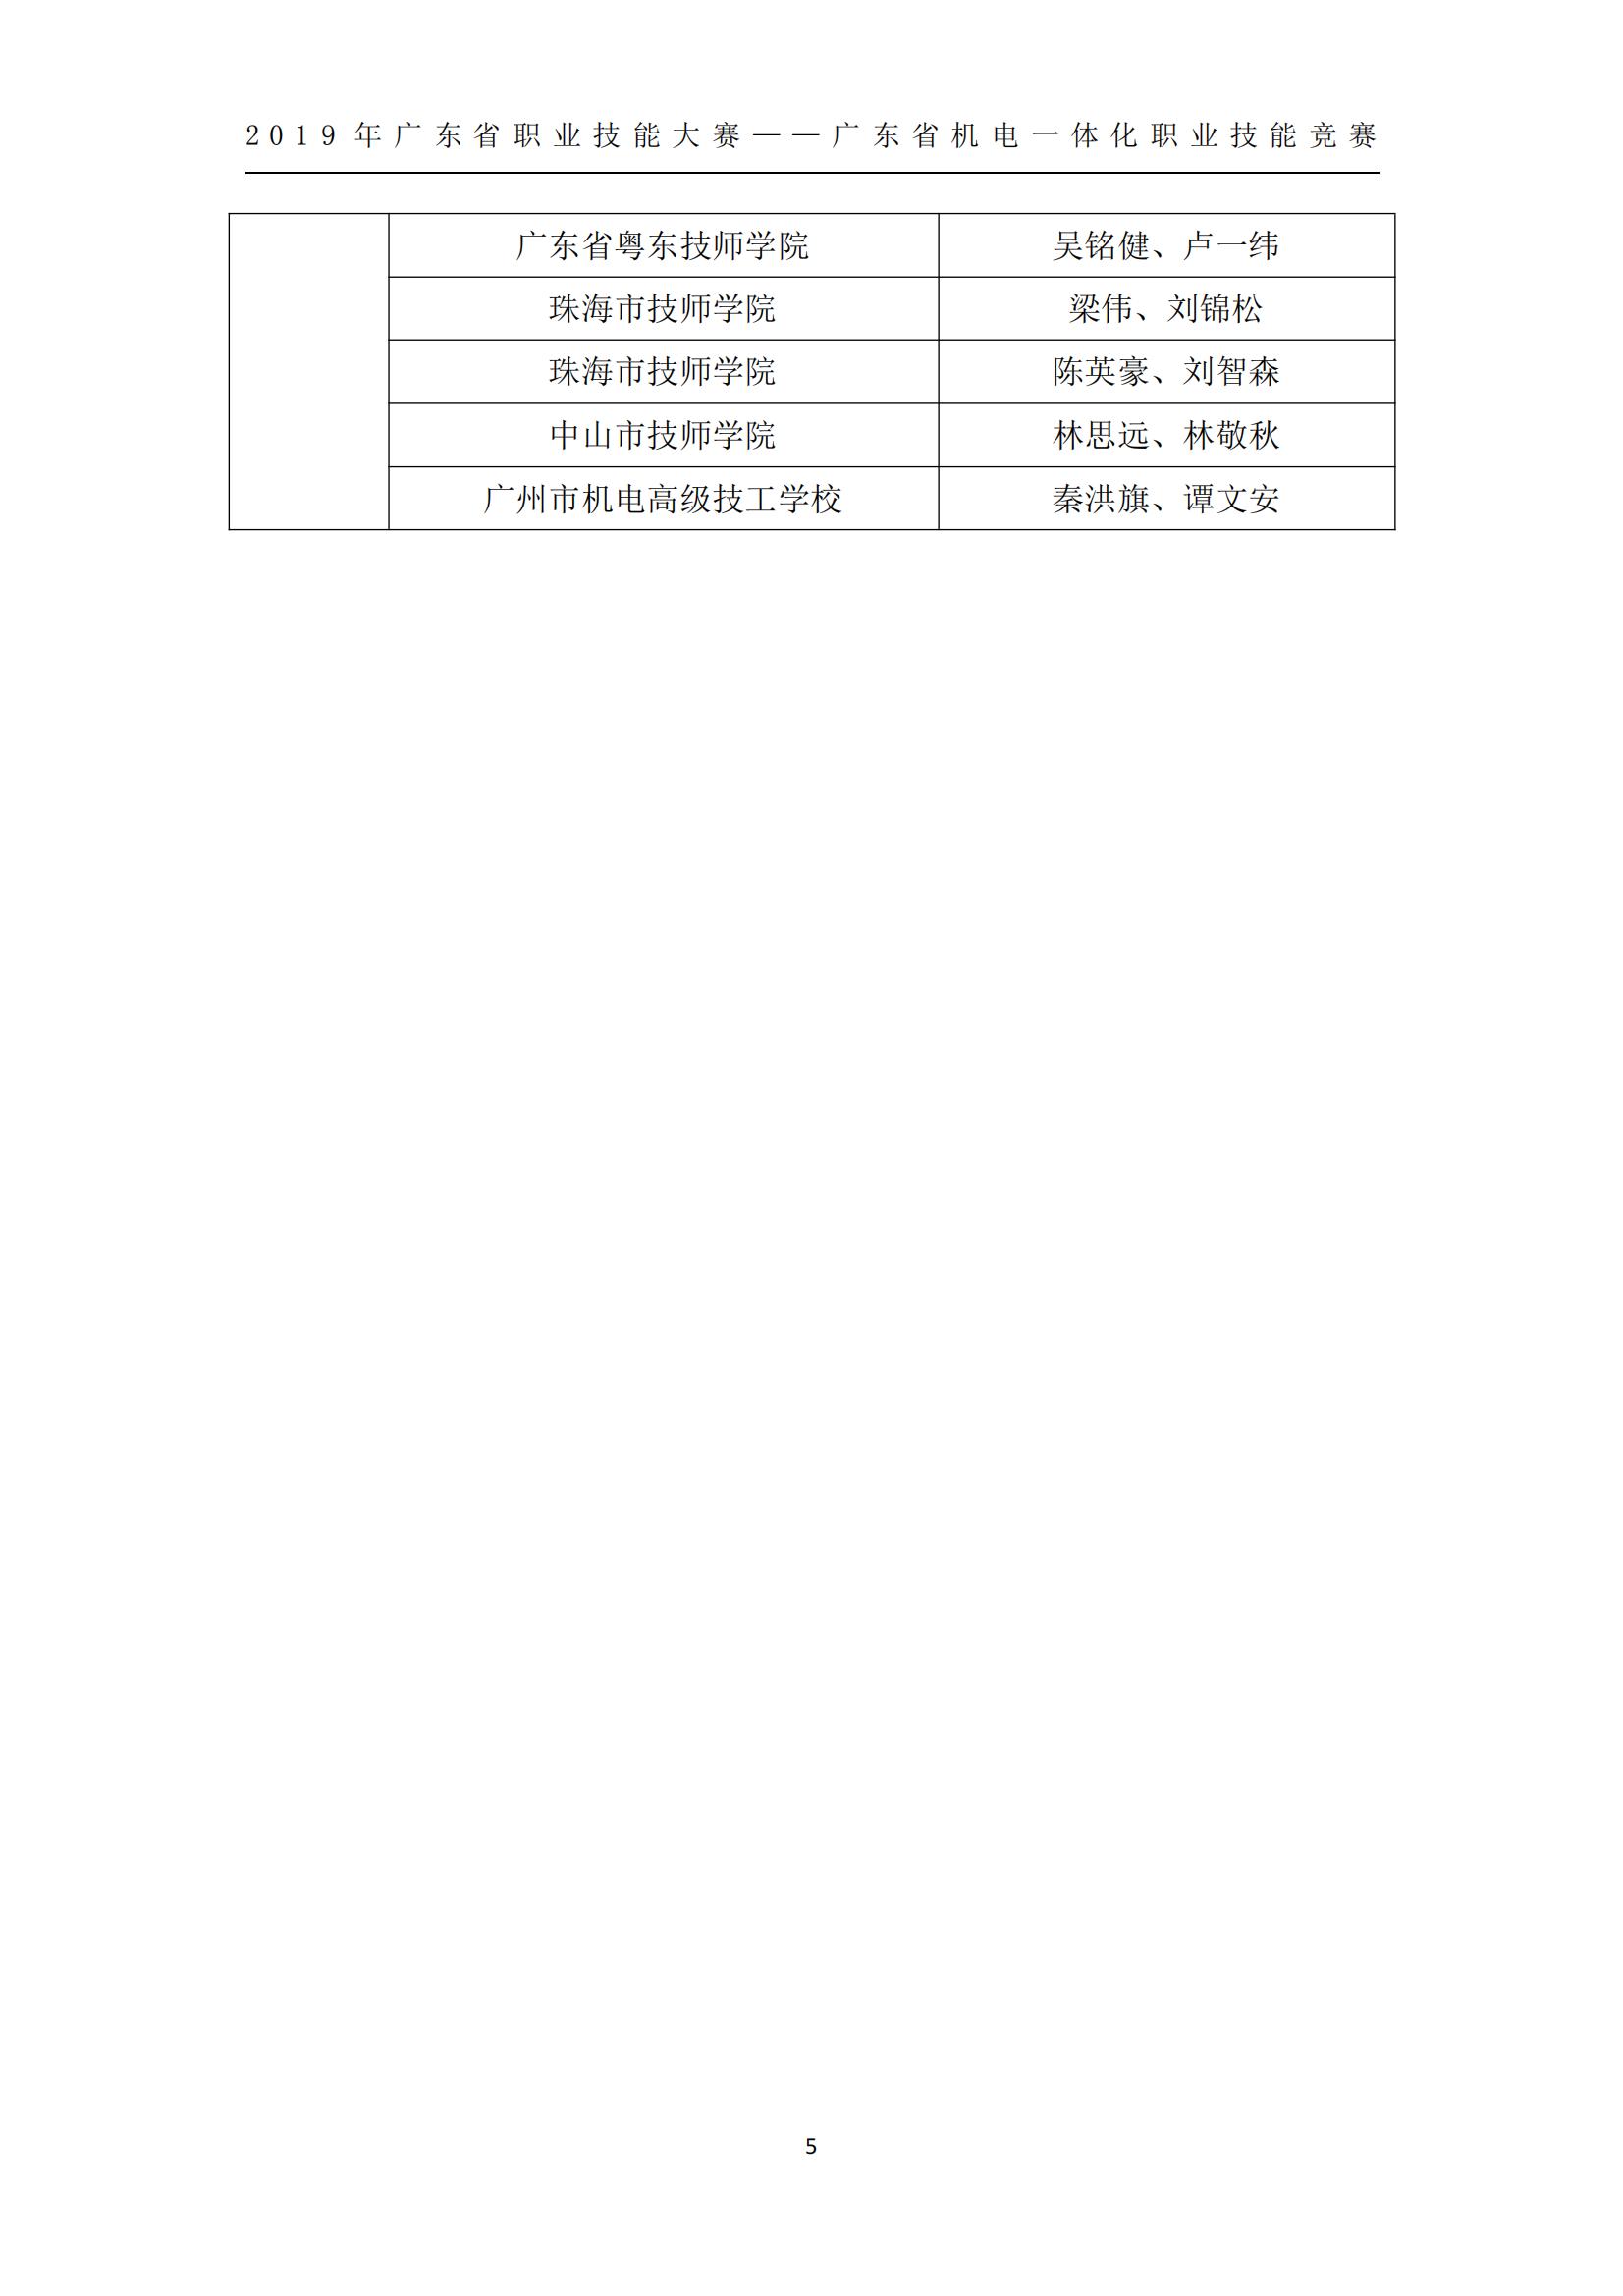 2019 年广东省职业技能大赛——广东省机电一体化职业技能竞赛获奖人员和单位公布_04.jpg